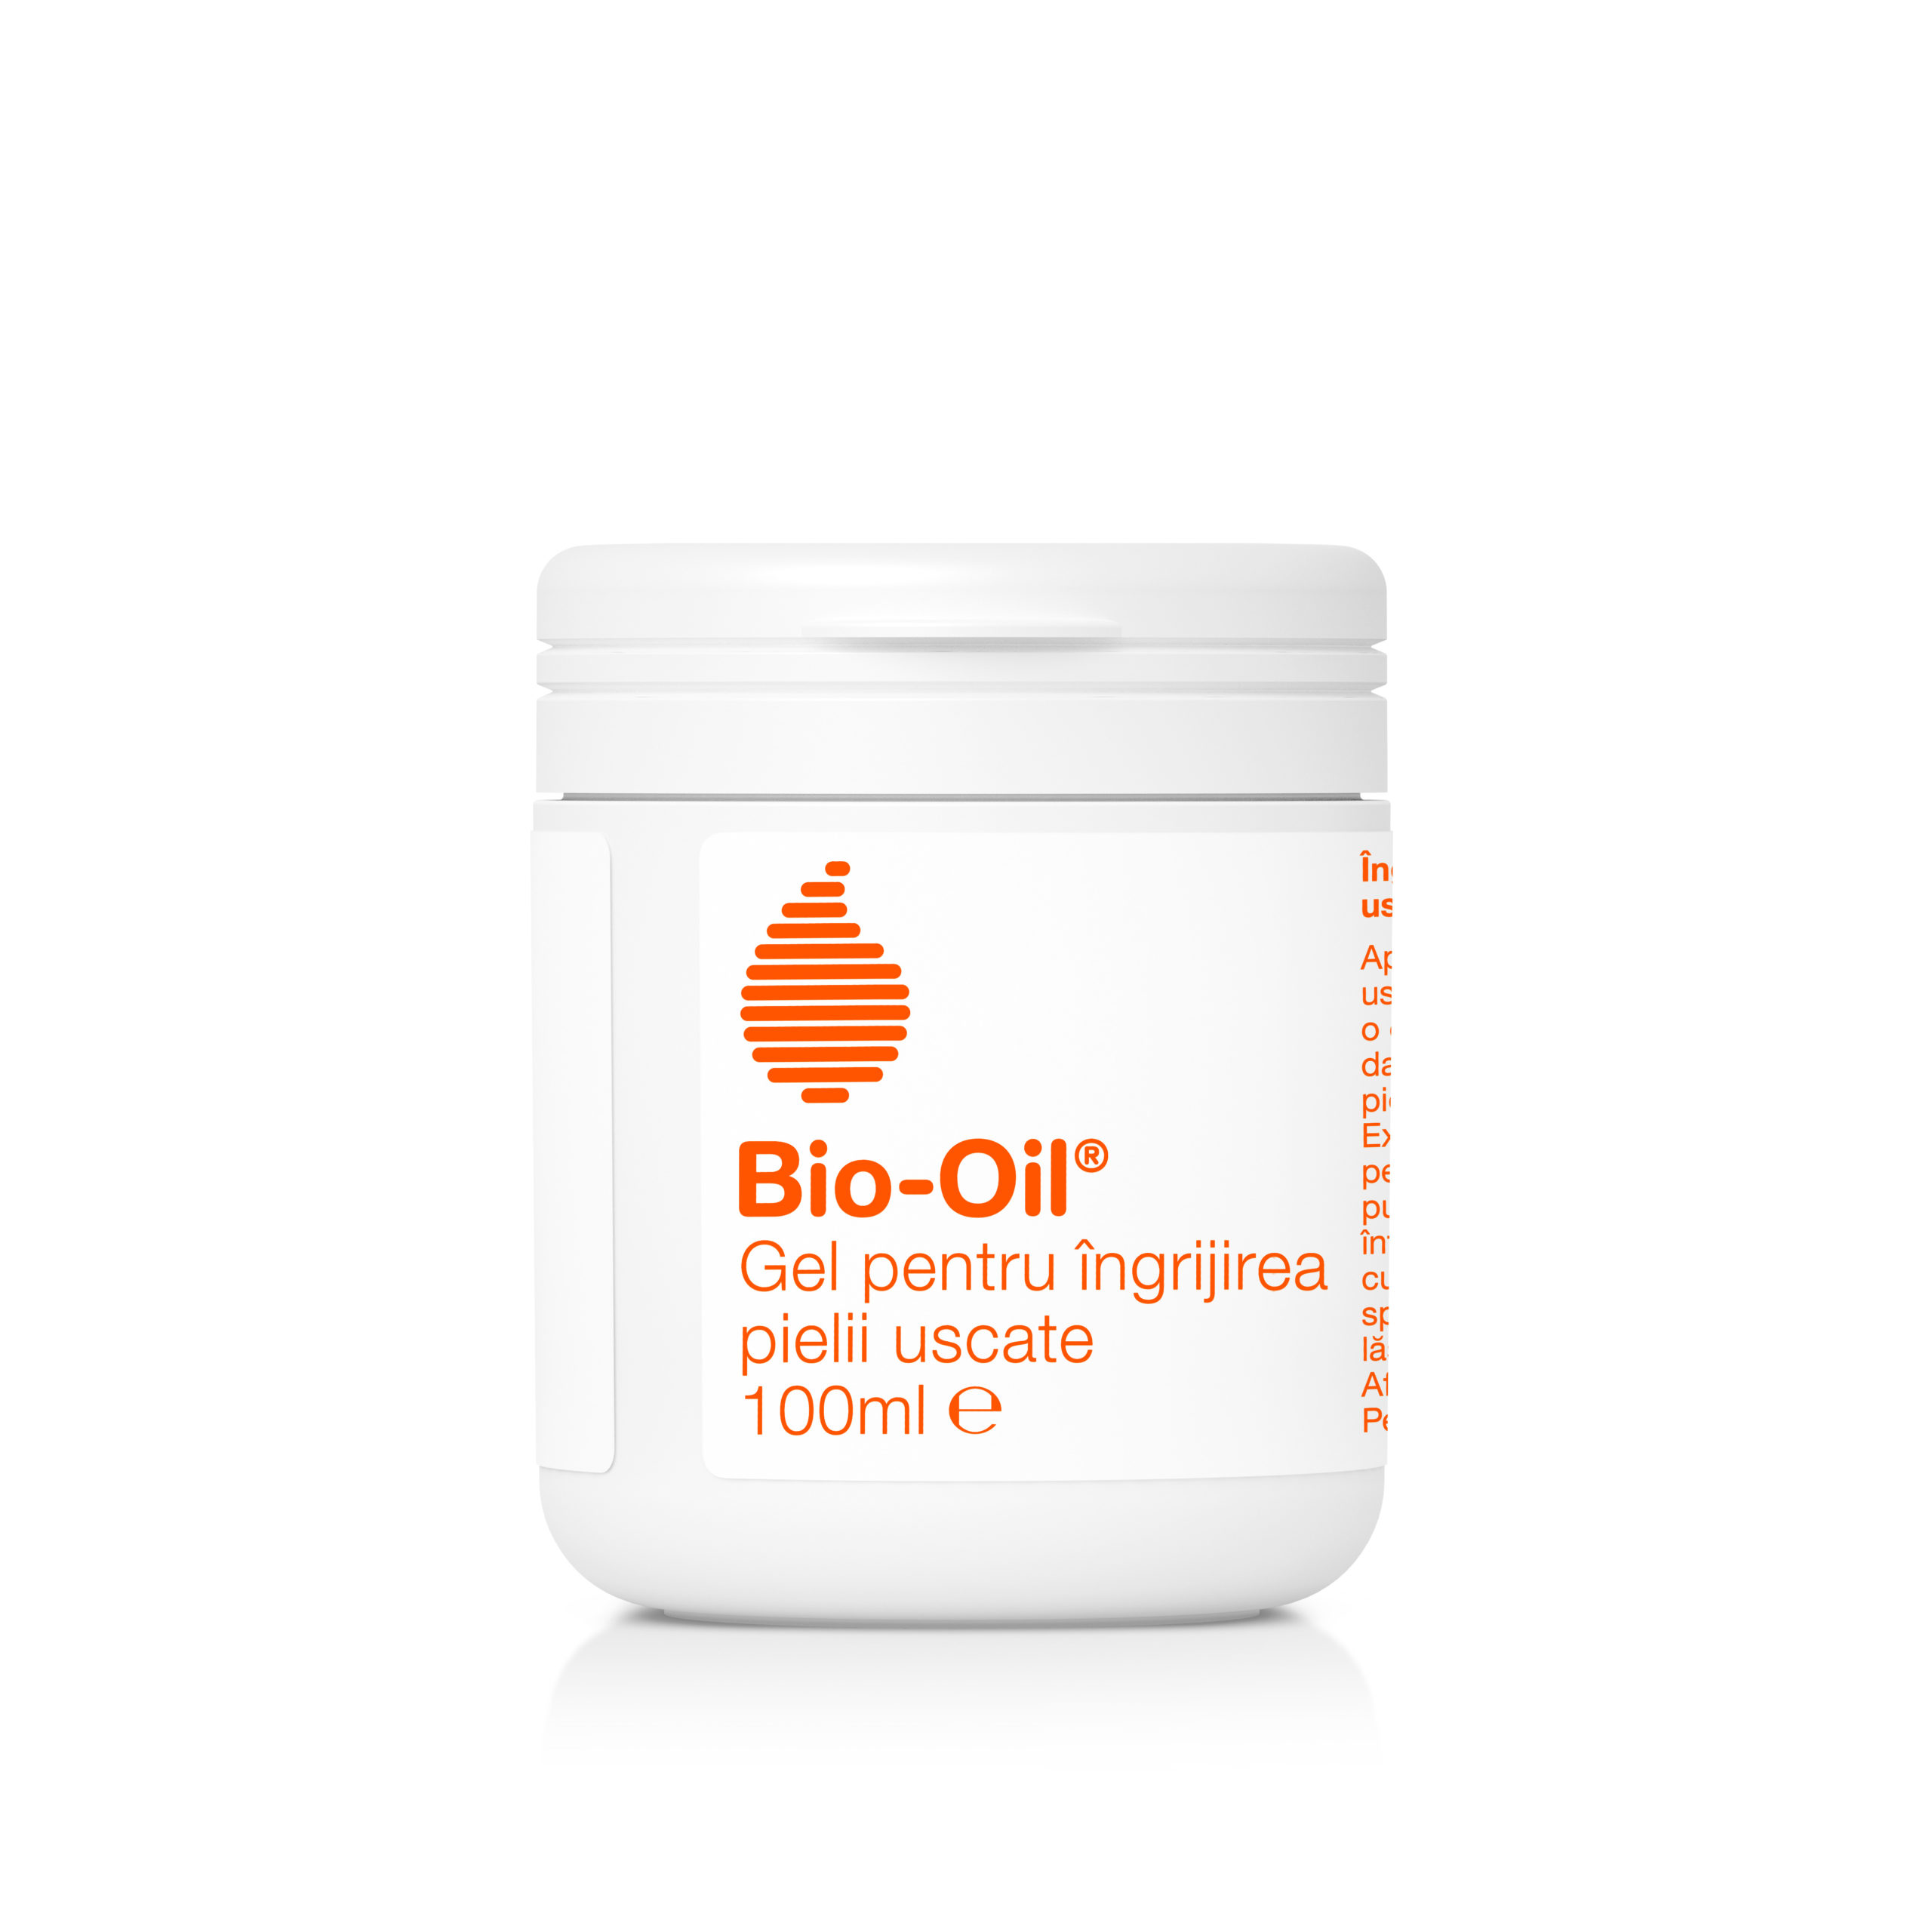 BIO OIL GEL PENTRU INGRIJIREA PIELII USCATE 100ML Bio-Oil imagine teramed.ro